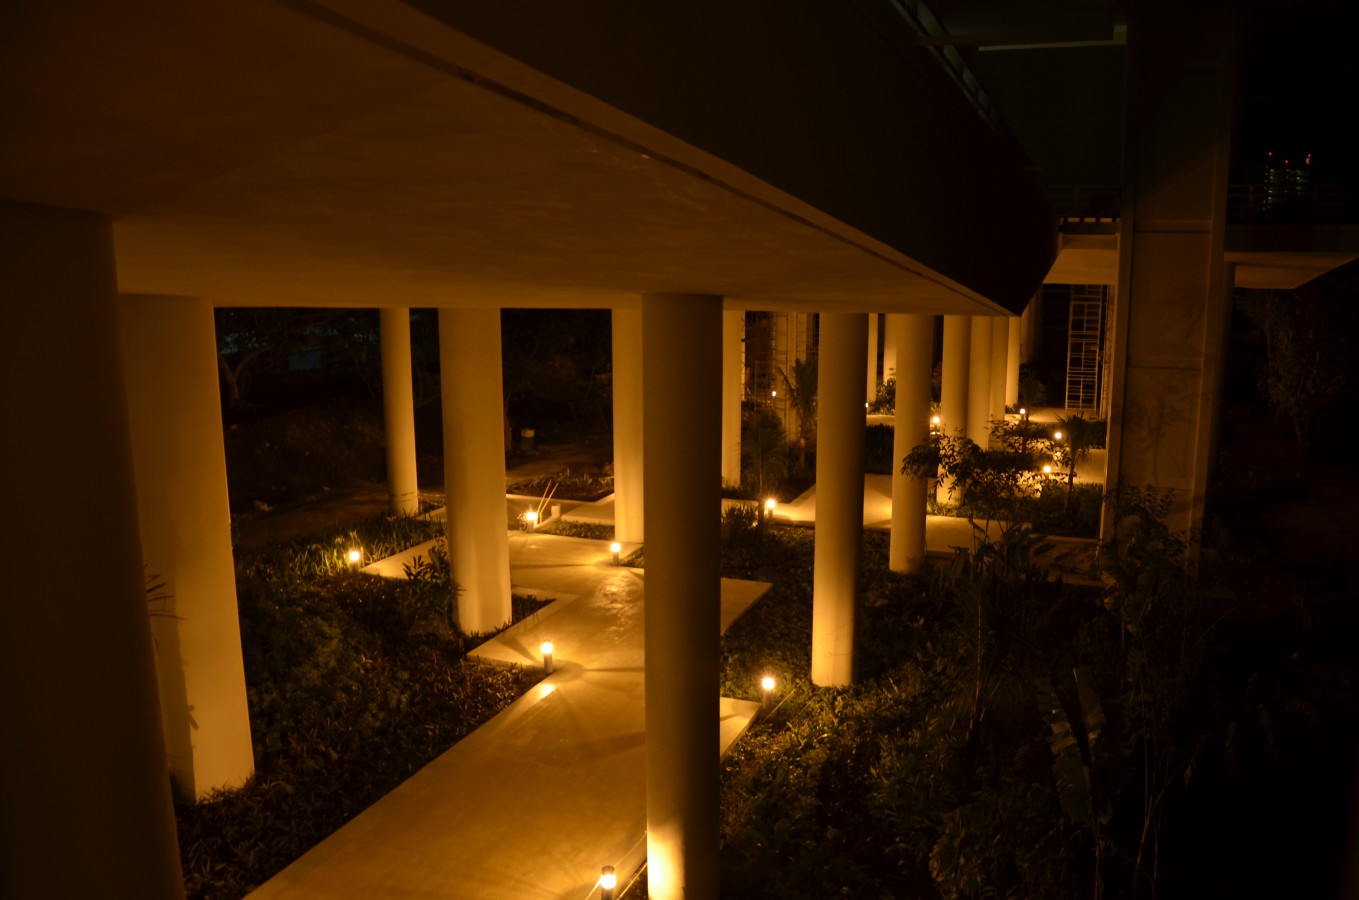 Pasillo iluminado del Museo Maya de Cancún